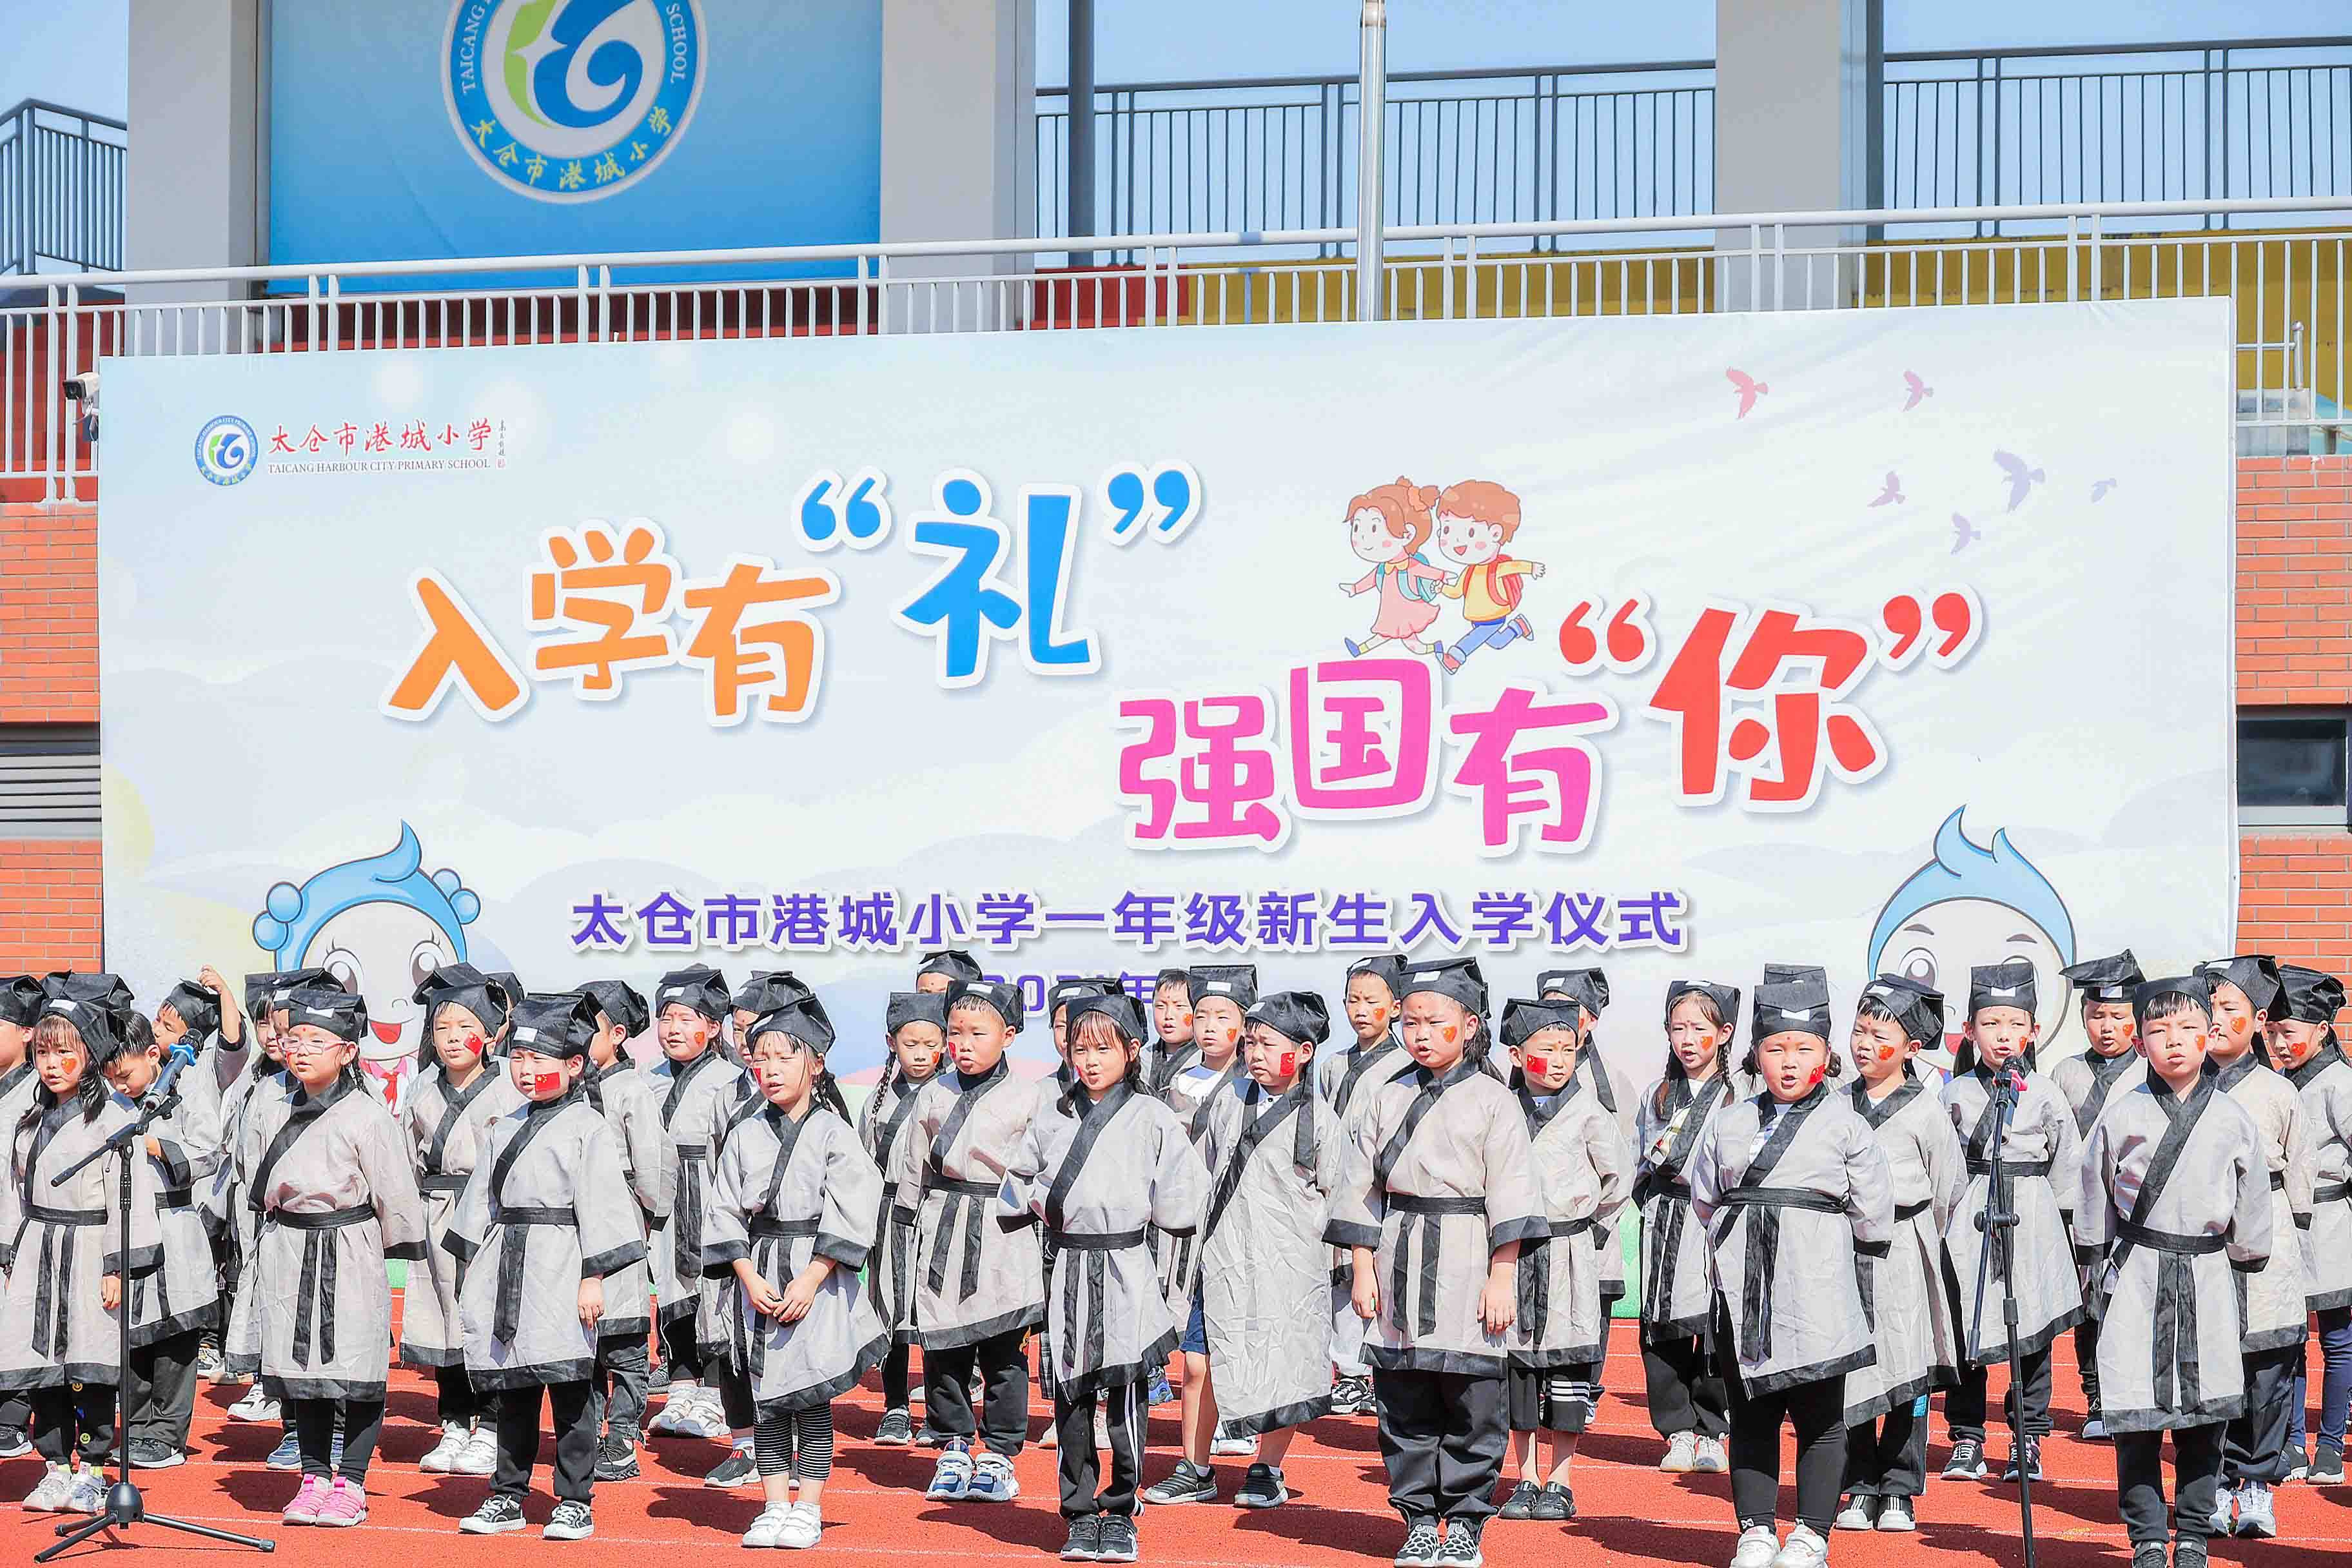 太仓市港城小学一年级新生入学体验传统礼仪 活动精彩纷呈